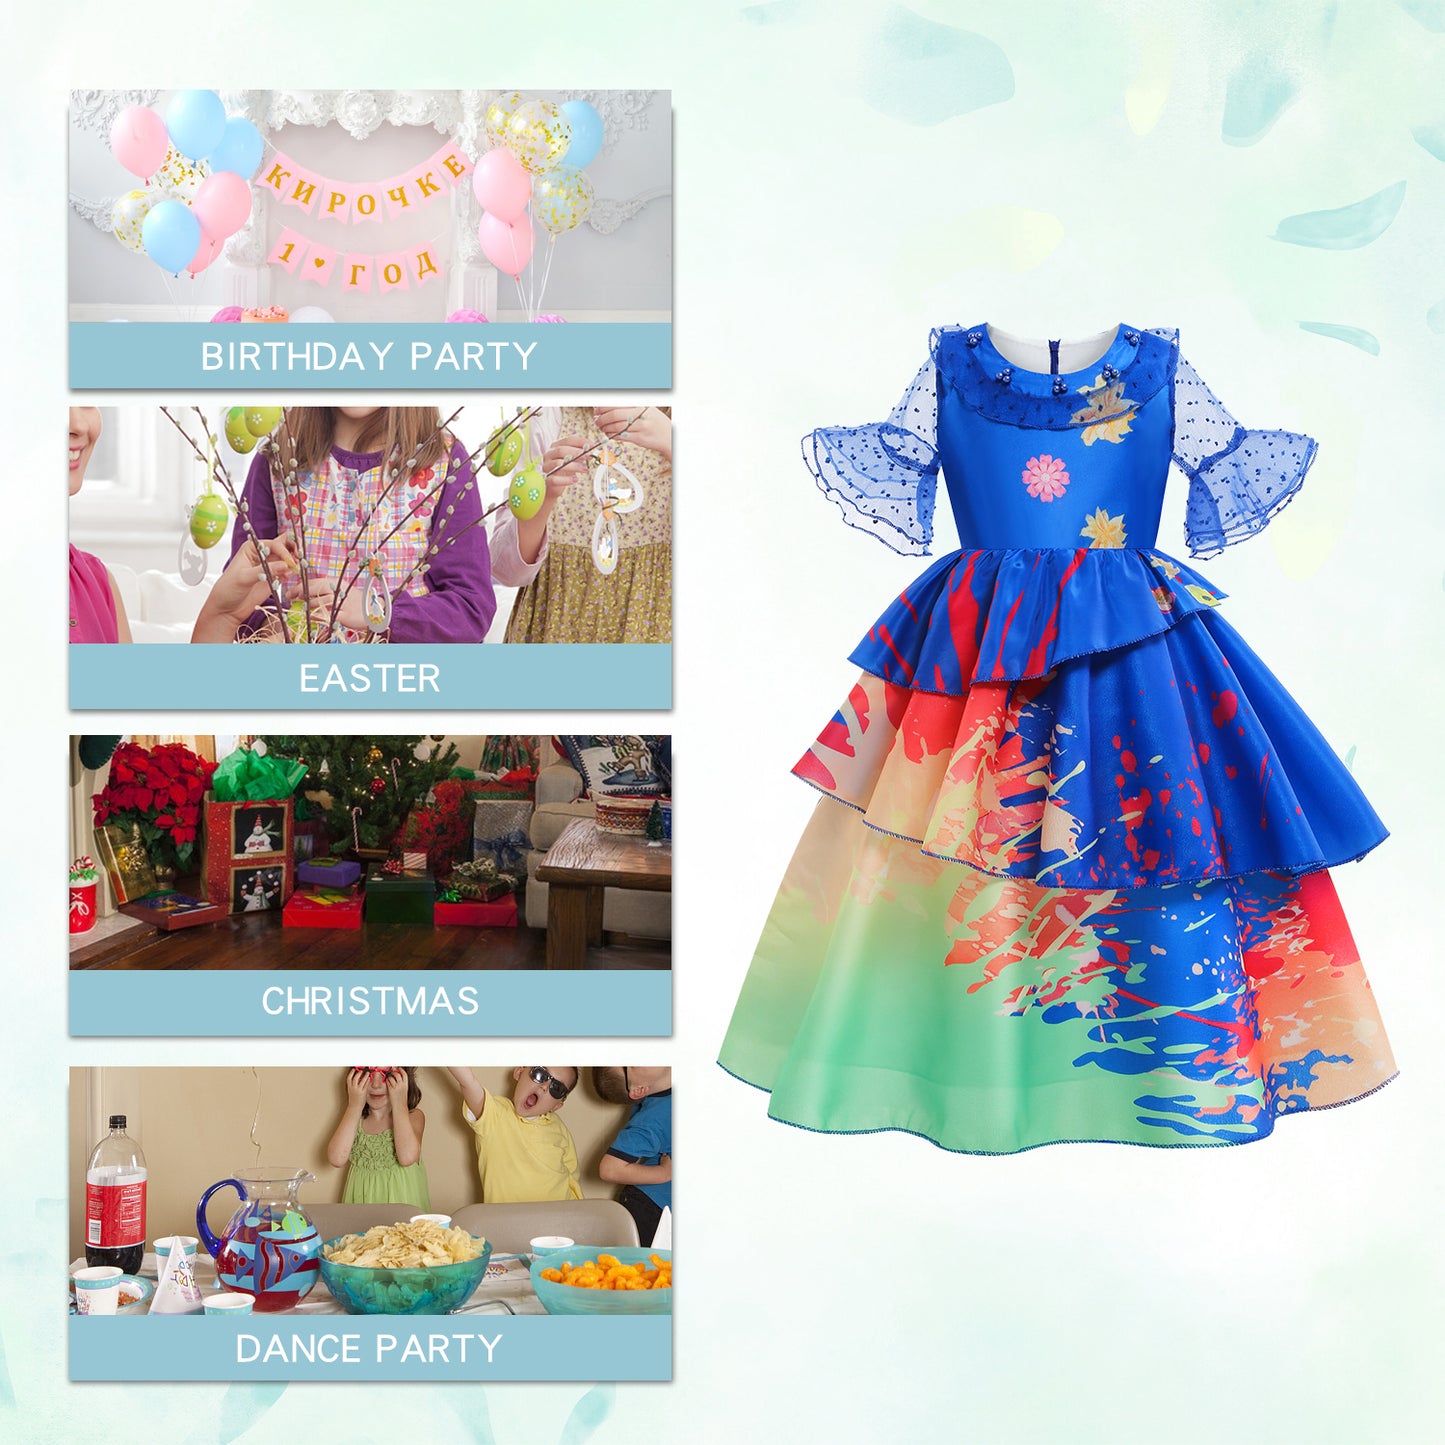 Foierp Girls Dress up - Costume Dress (Blue)